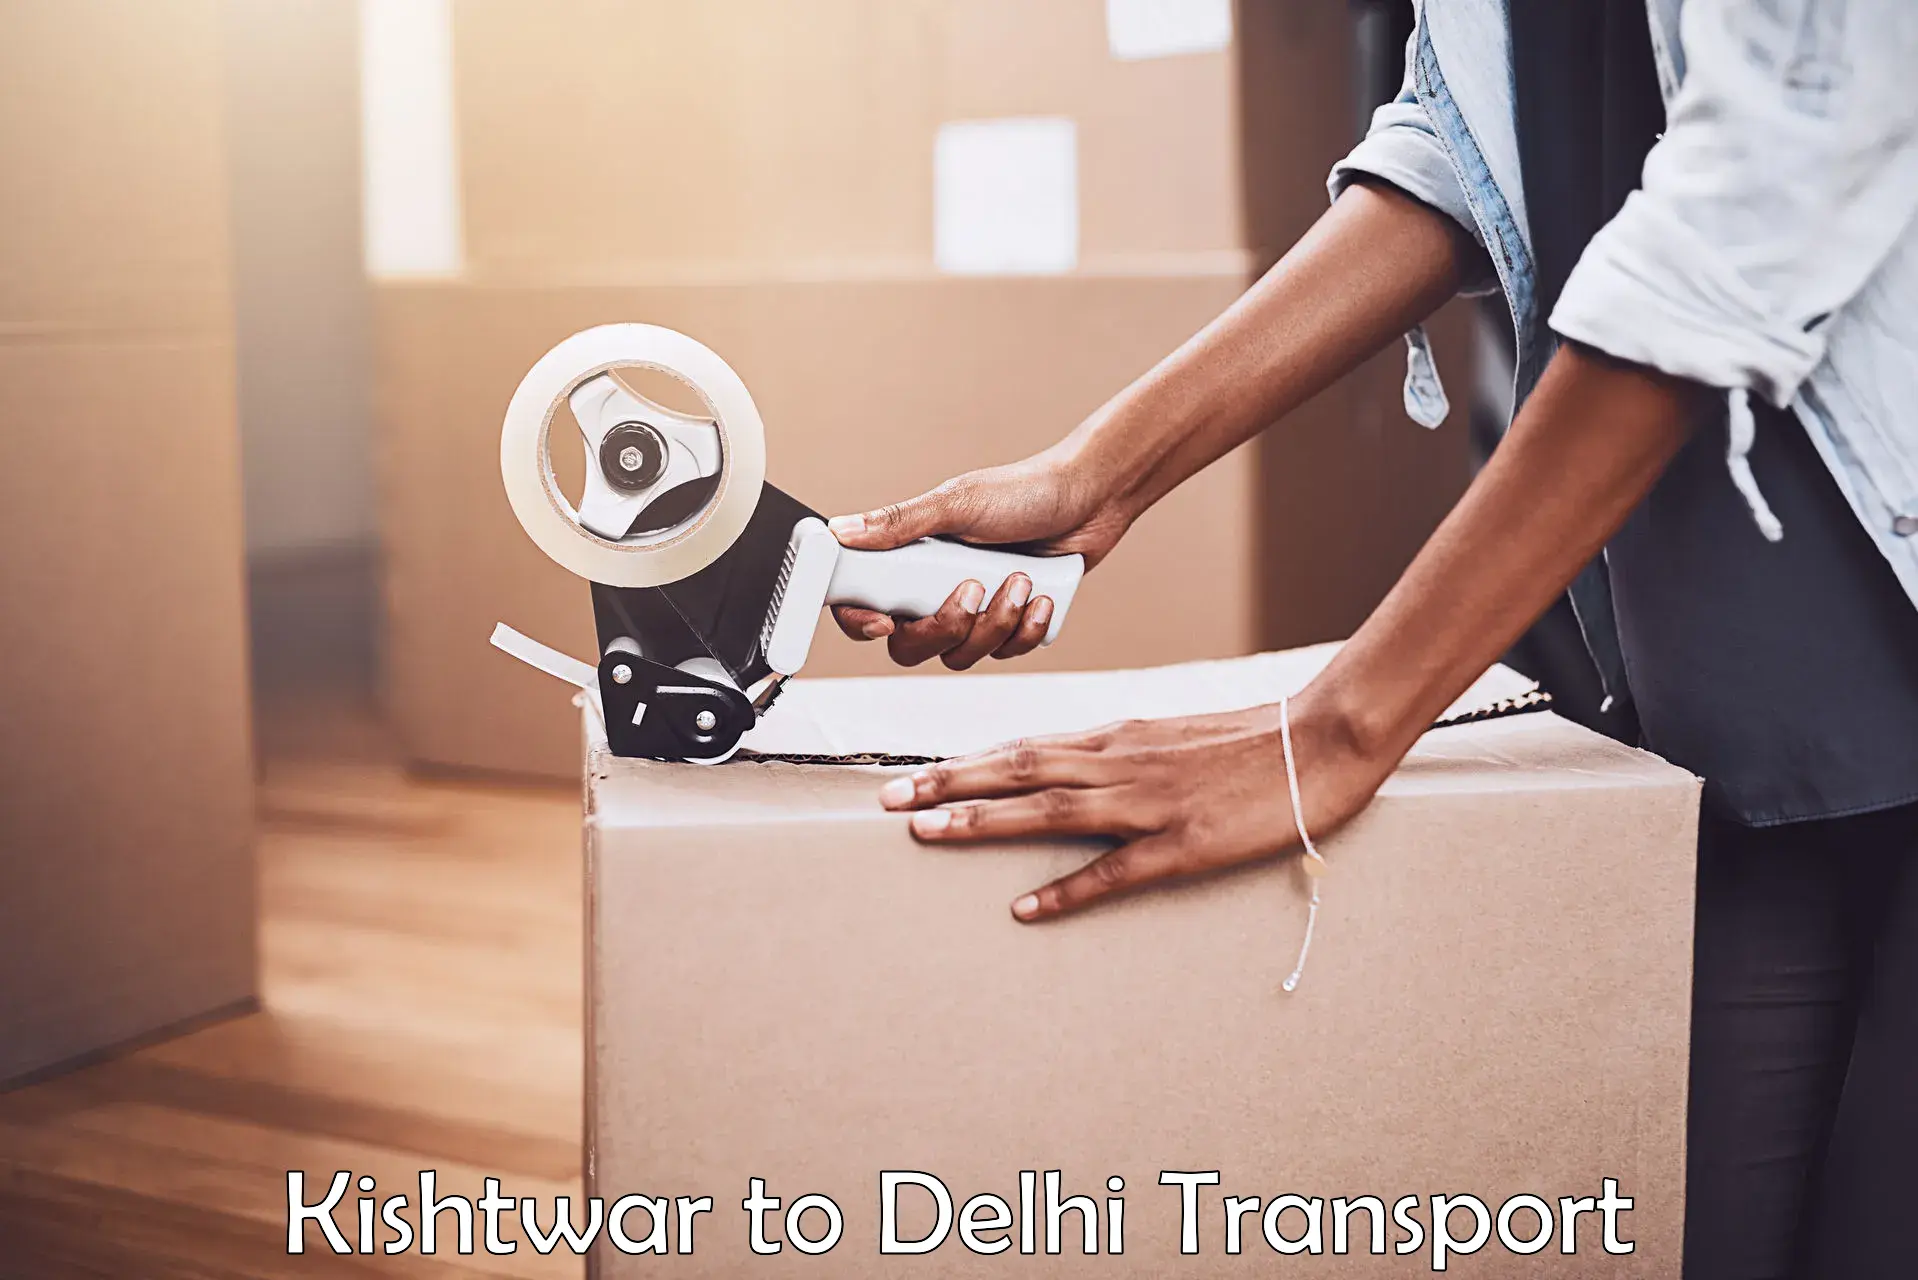 Online transport service Kishtwar to NCR